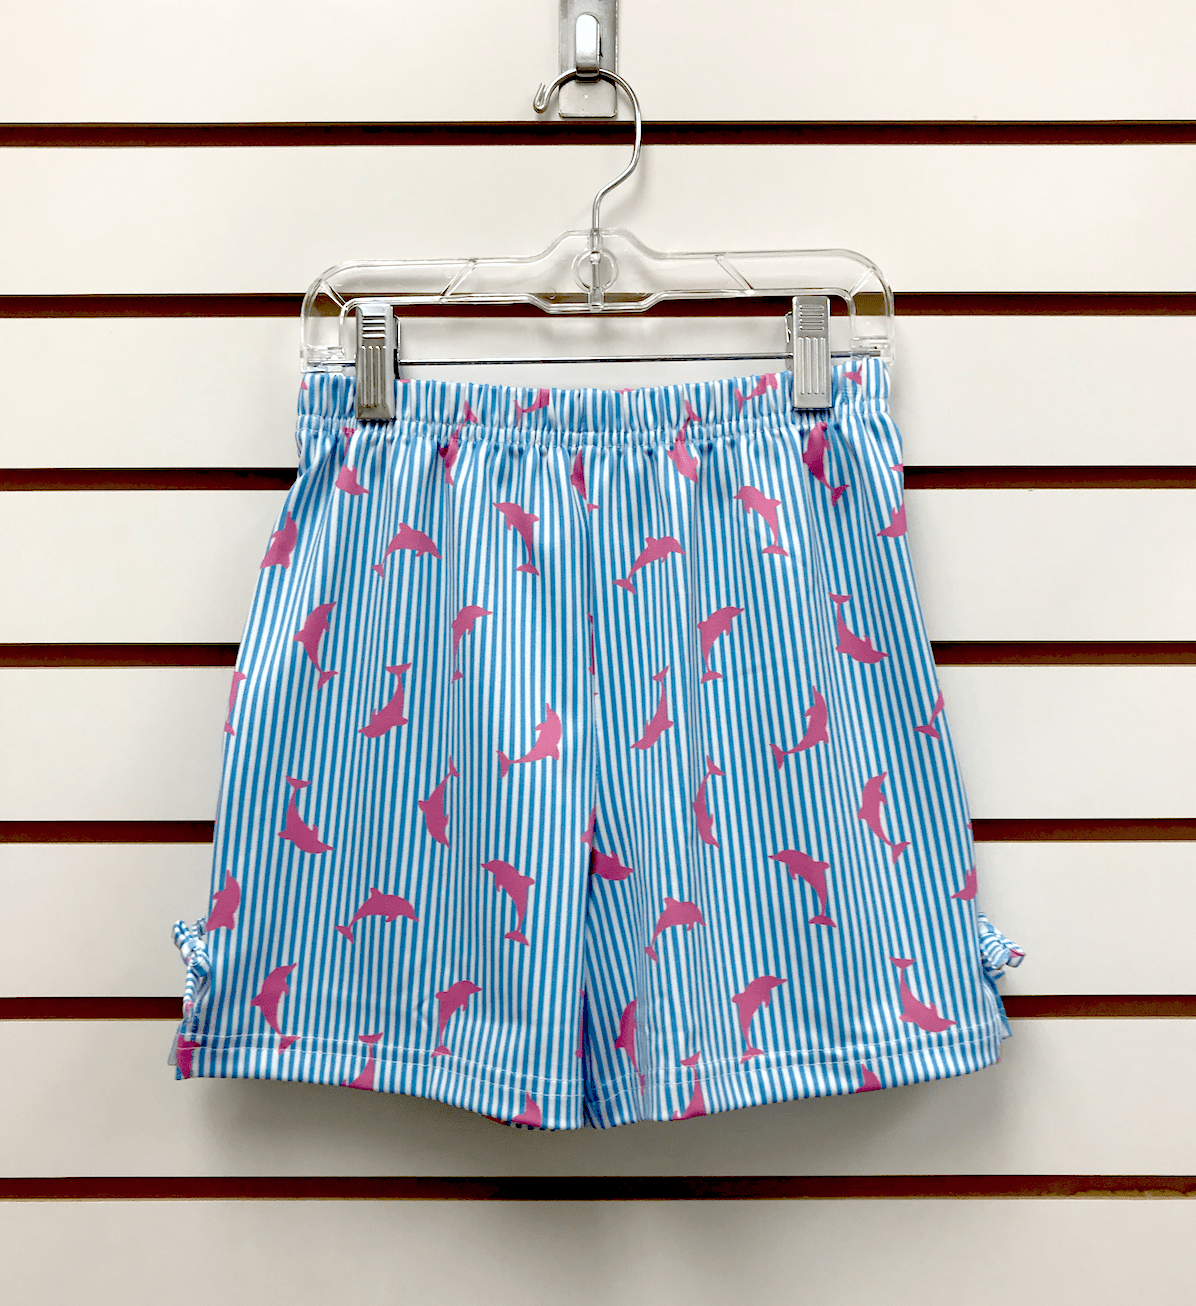 Vive La Fete - Vive La Fete Dolphin Print Striped Turquoise Bow Shorts - Little Miss Muffin Children & Home